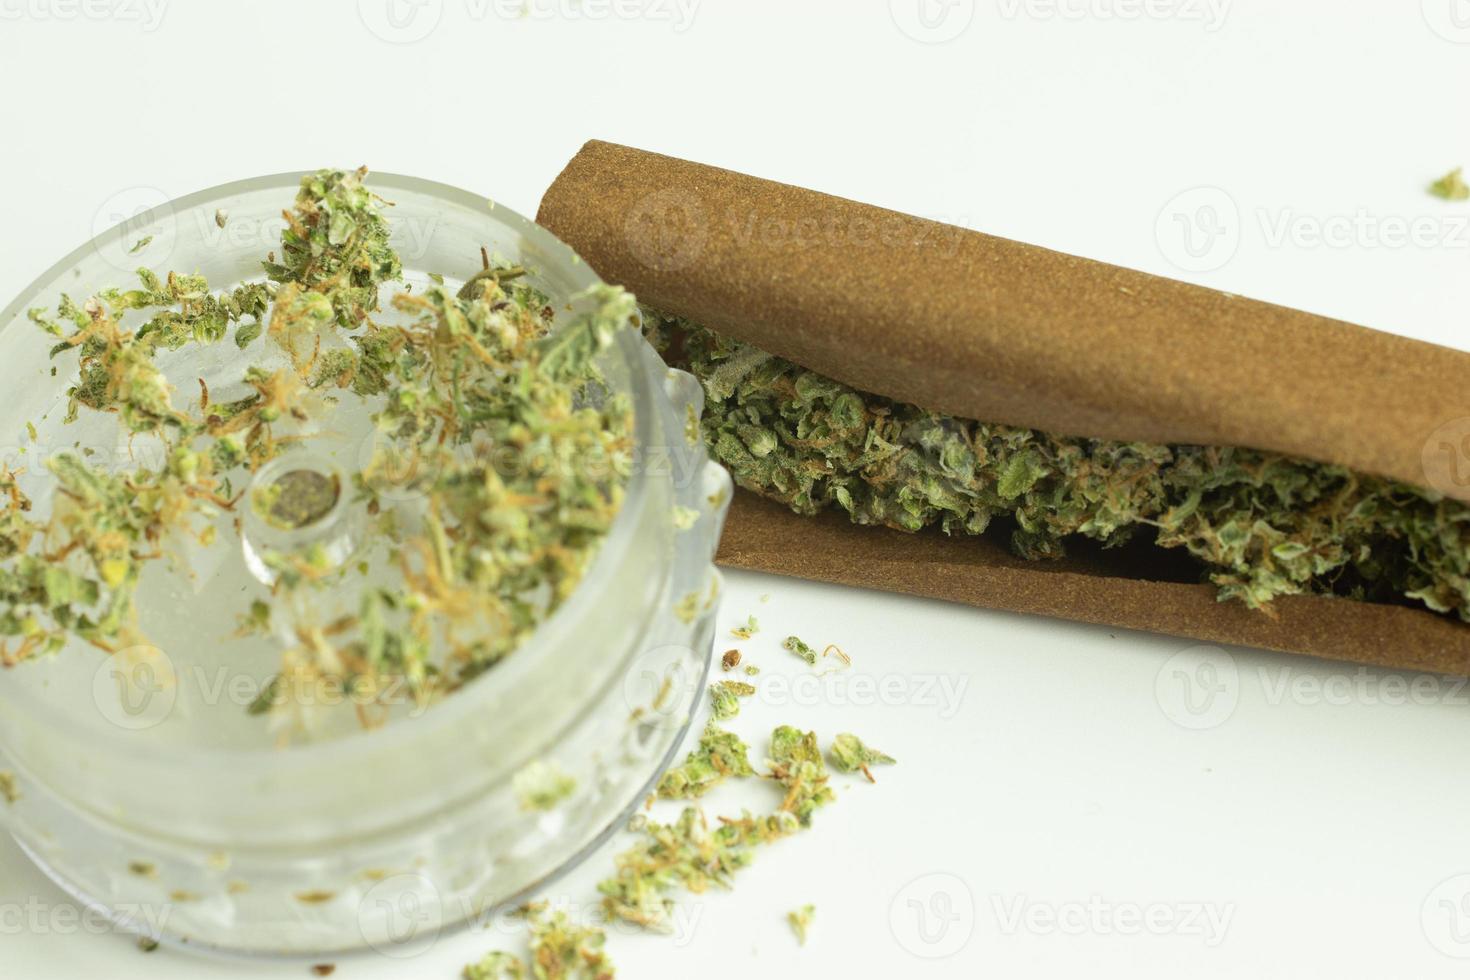 molinillo y papel de tabaco con cannabis para fumar recreativamente legal. el uso de drogas en medicina o atención médica foto